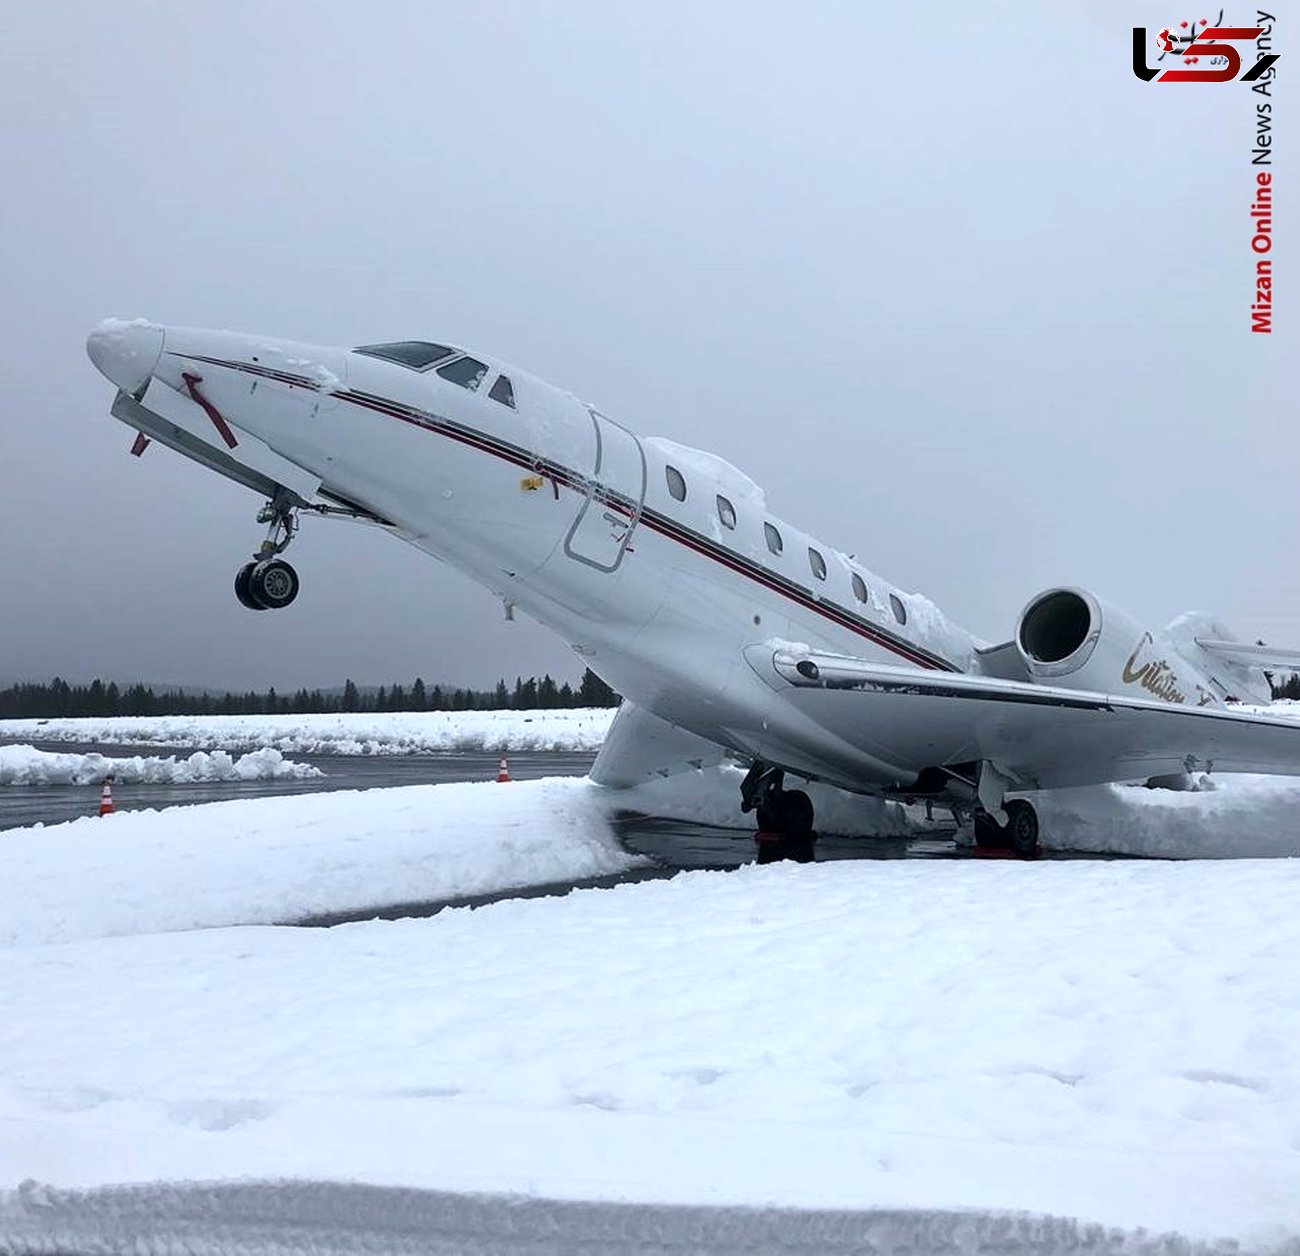 
سنگینی برف بر روی بال، هواپیما را به پایین کشید+عکس
